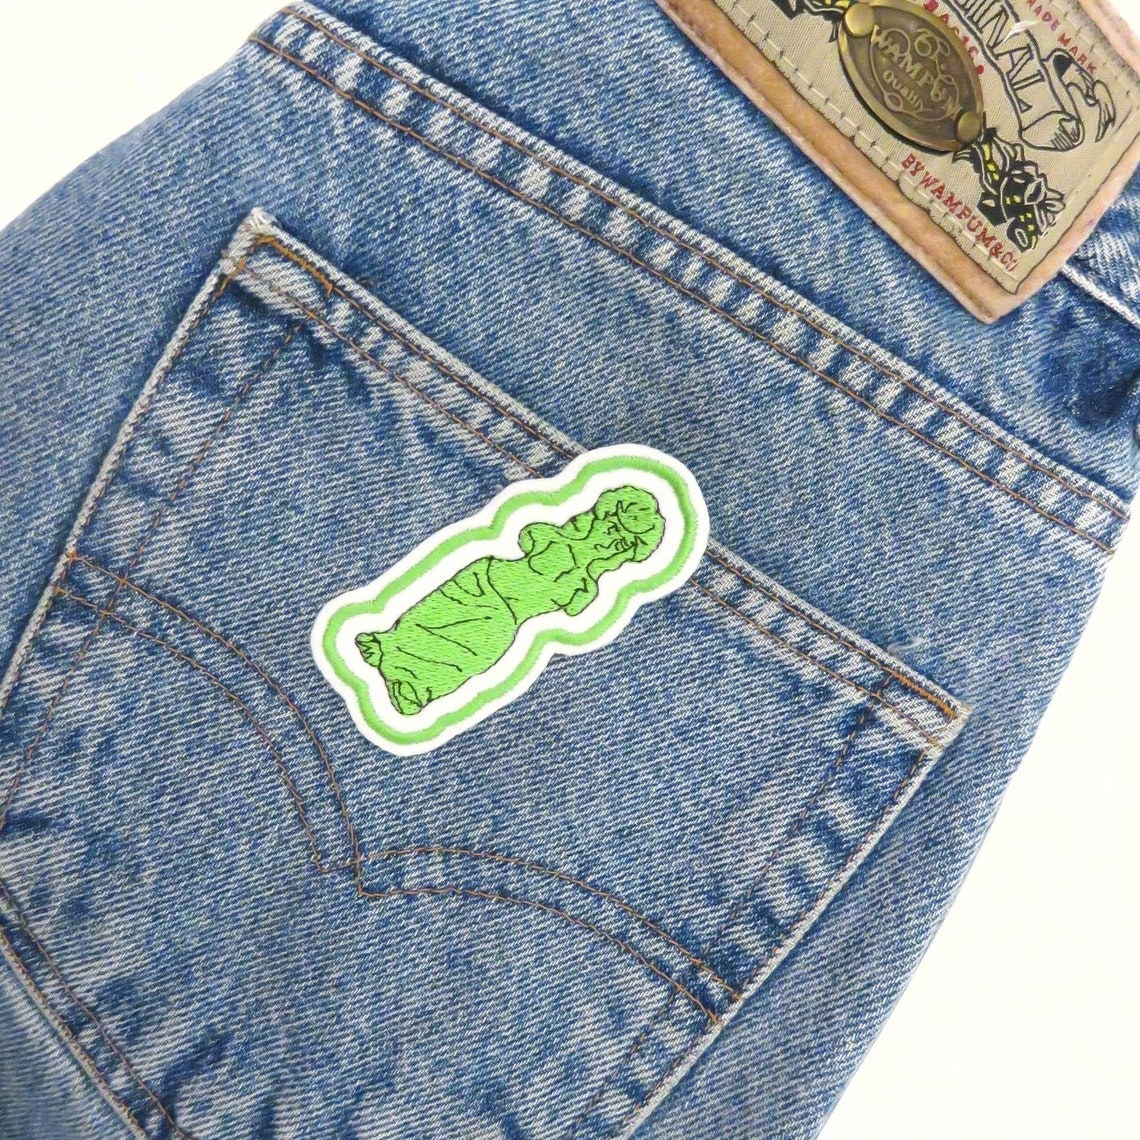 patch shaped like a gummy venus de milo statue sewn onto the back of jeans